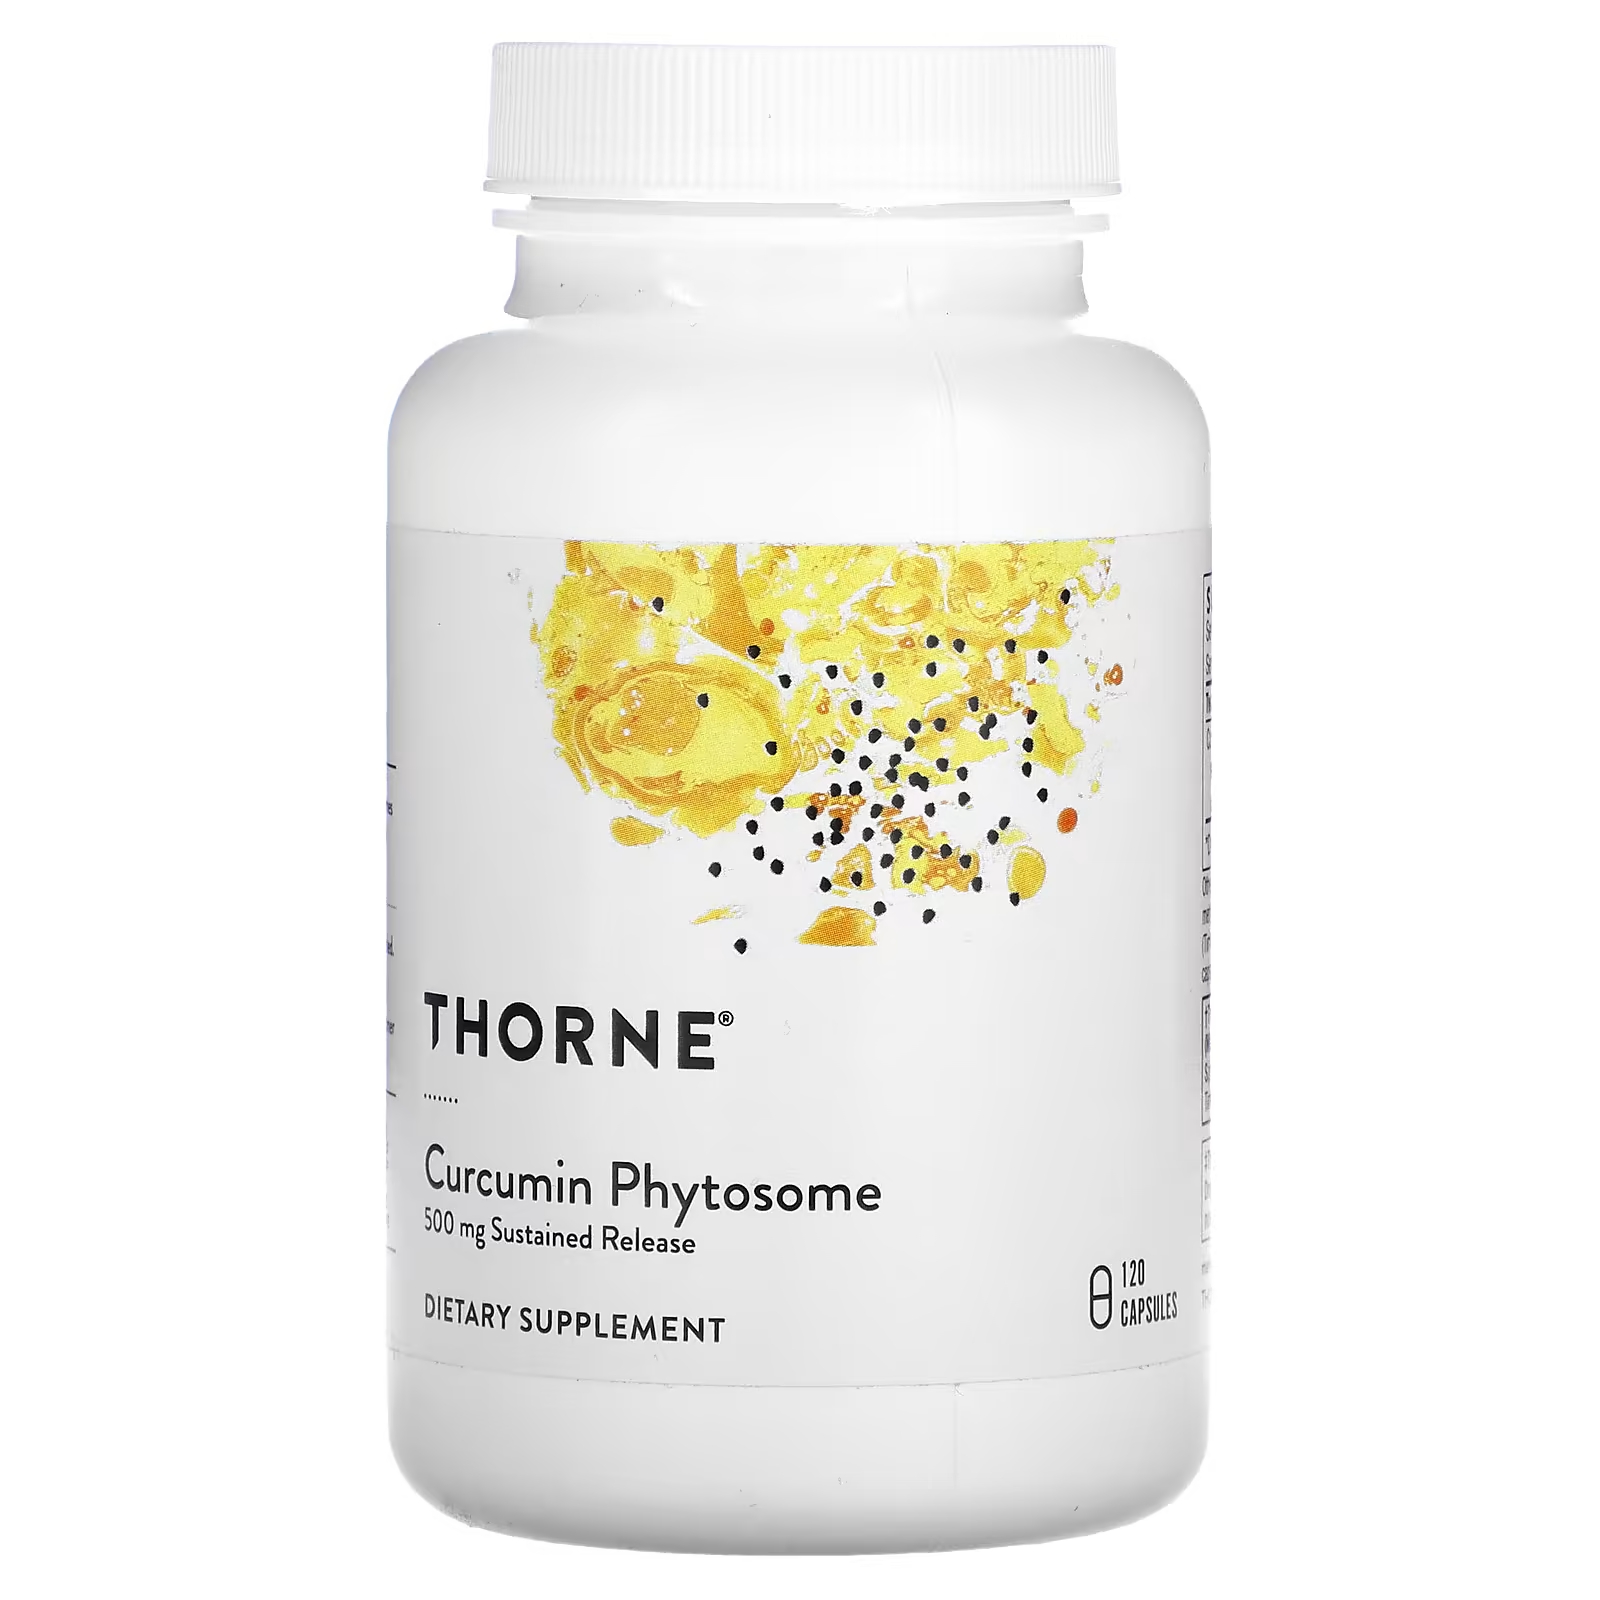 Thorne Curcumin Phytosome замедленного высвобождения 500 мг 120 капсул фитосомы куркумина meriva sf thorne research 250 мг 120 капсул